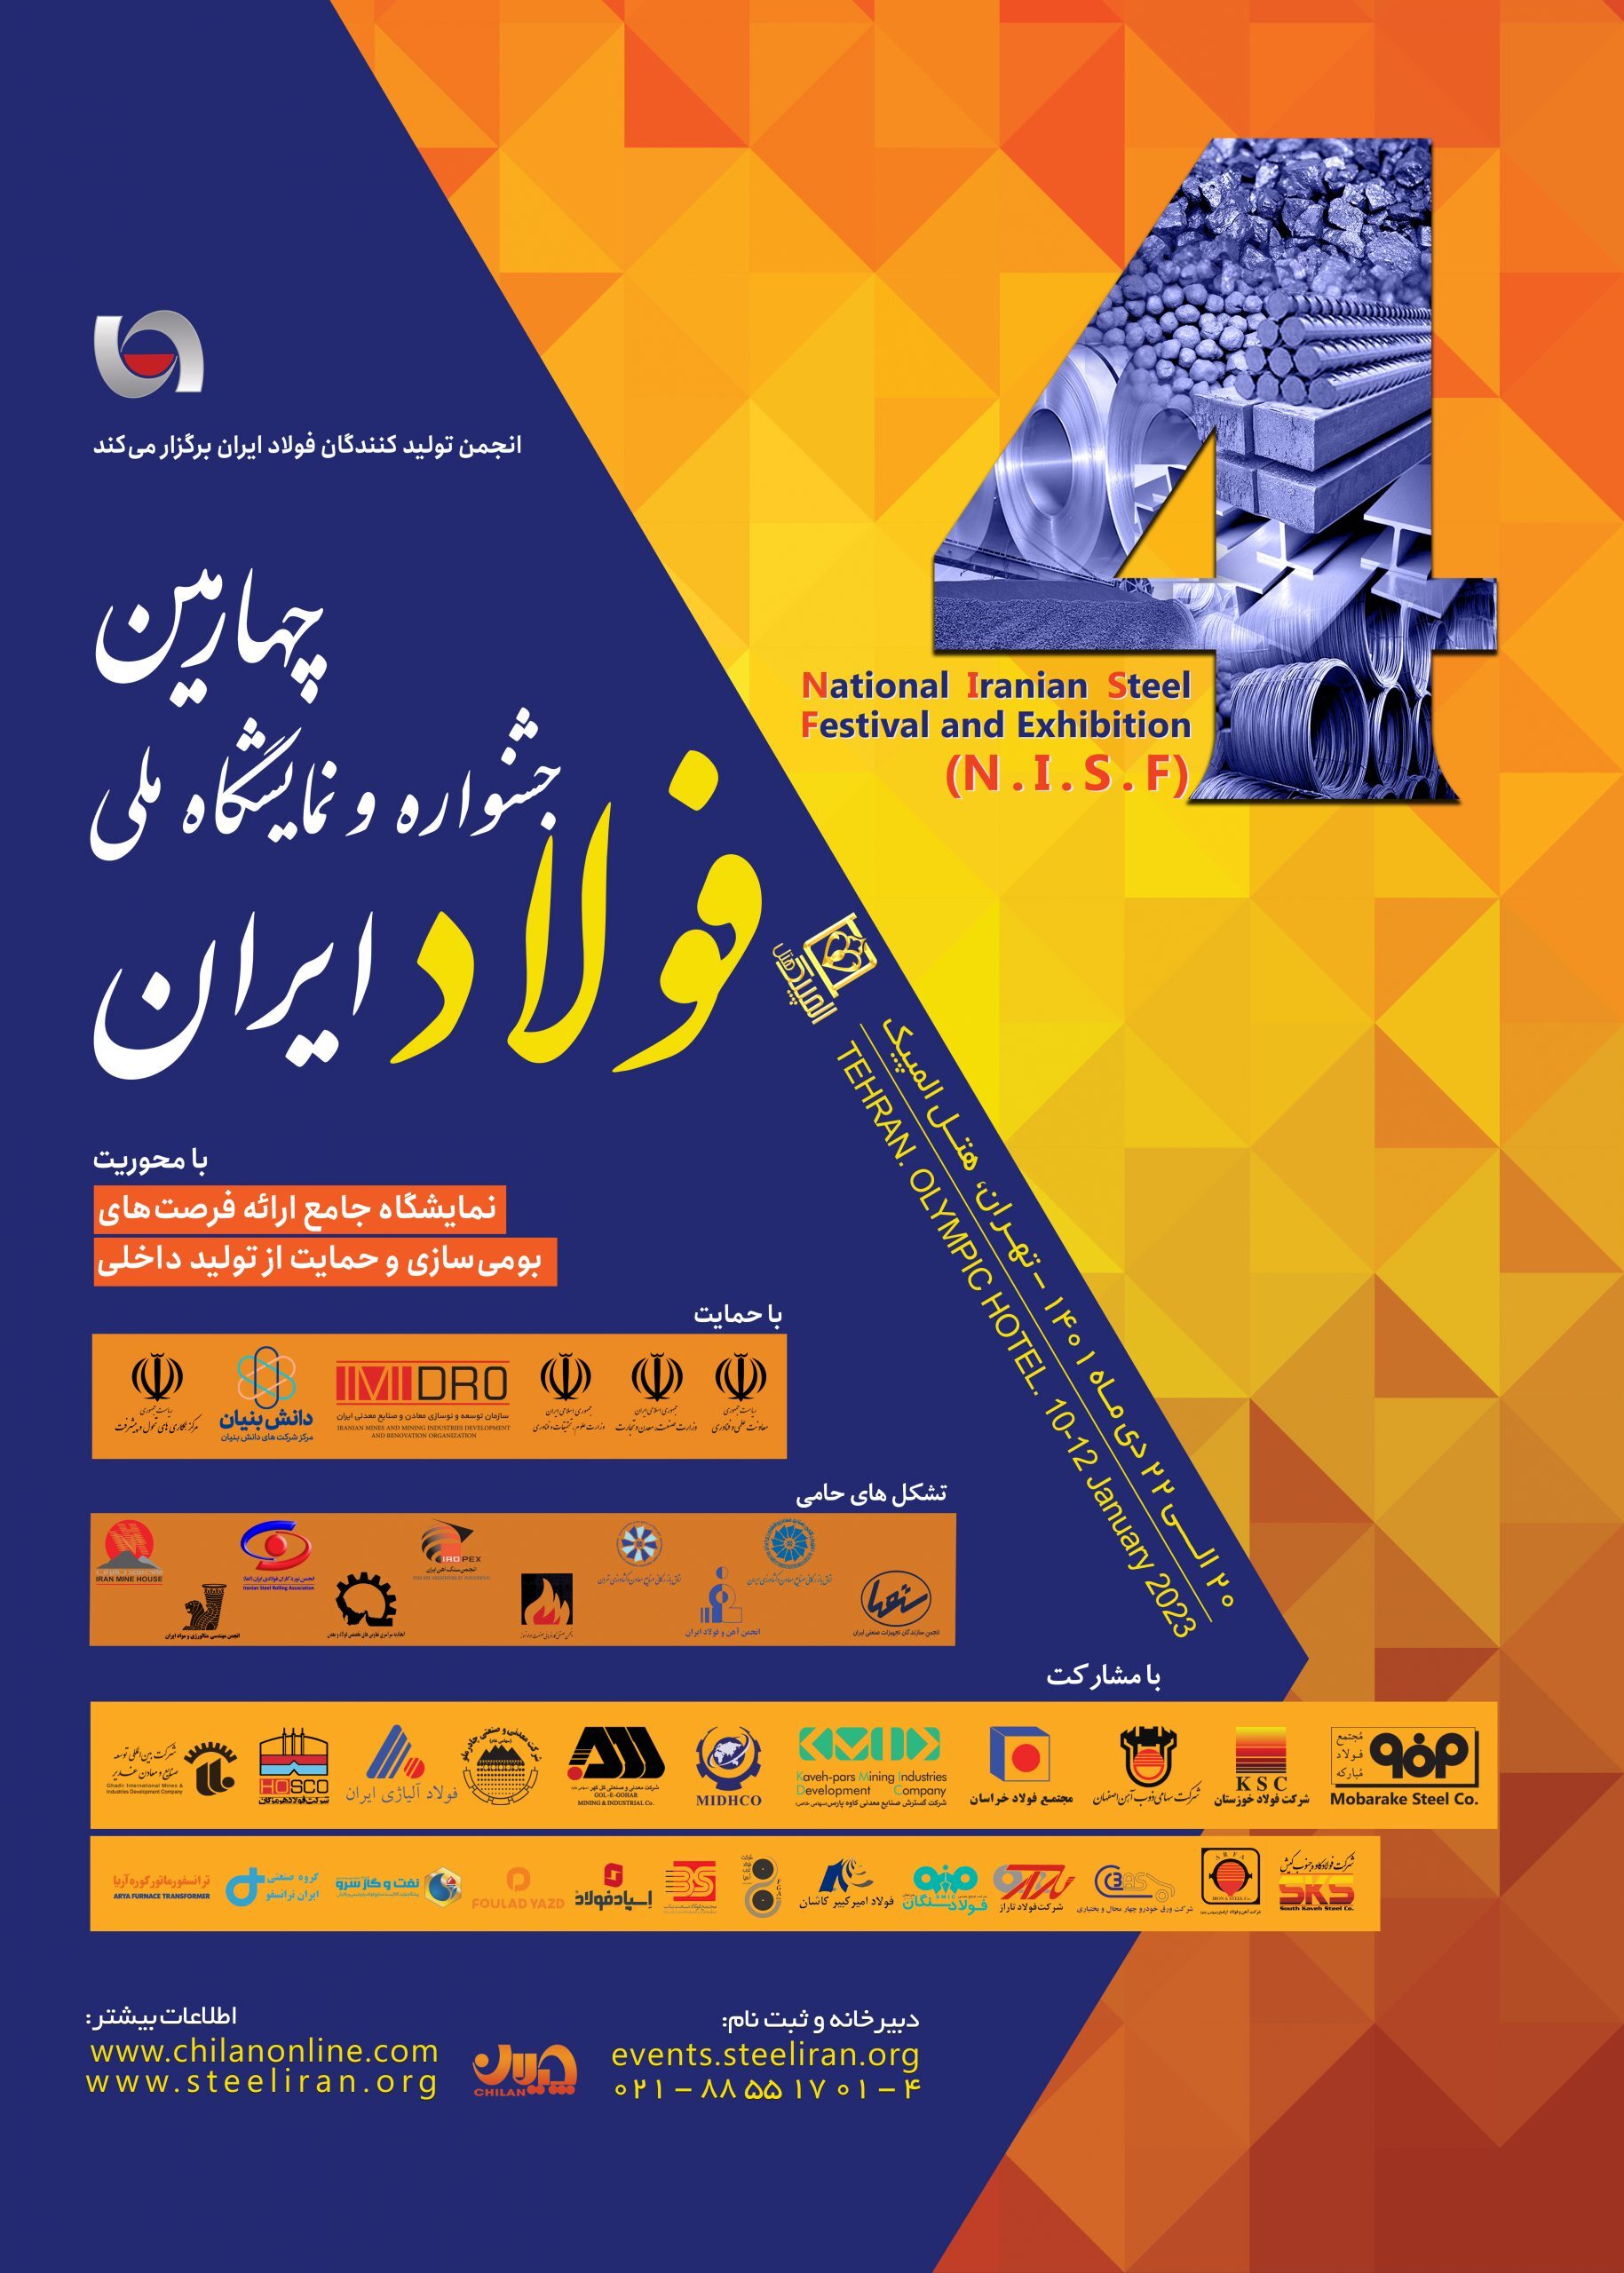 پخش زنده افتتاحیه چهارمین جشنواره و نمایشگاه ملی فولاد + لینک پخش زنده